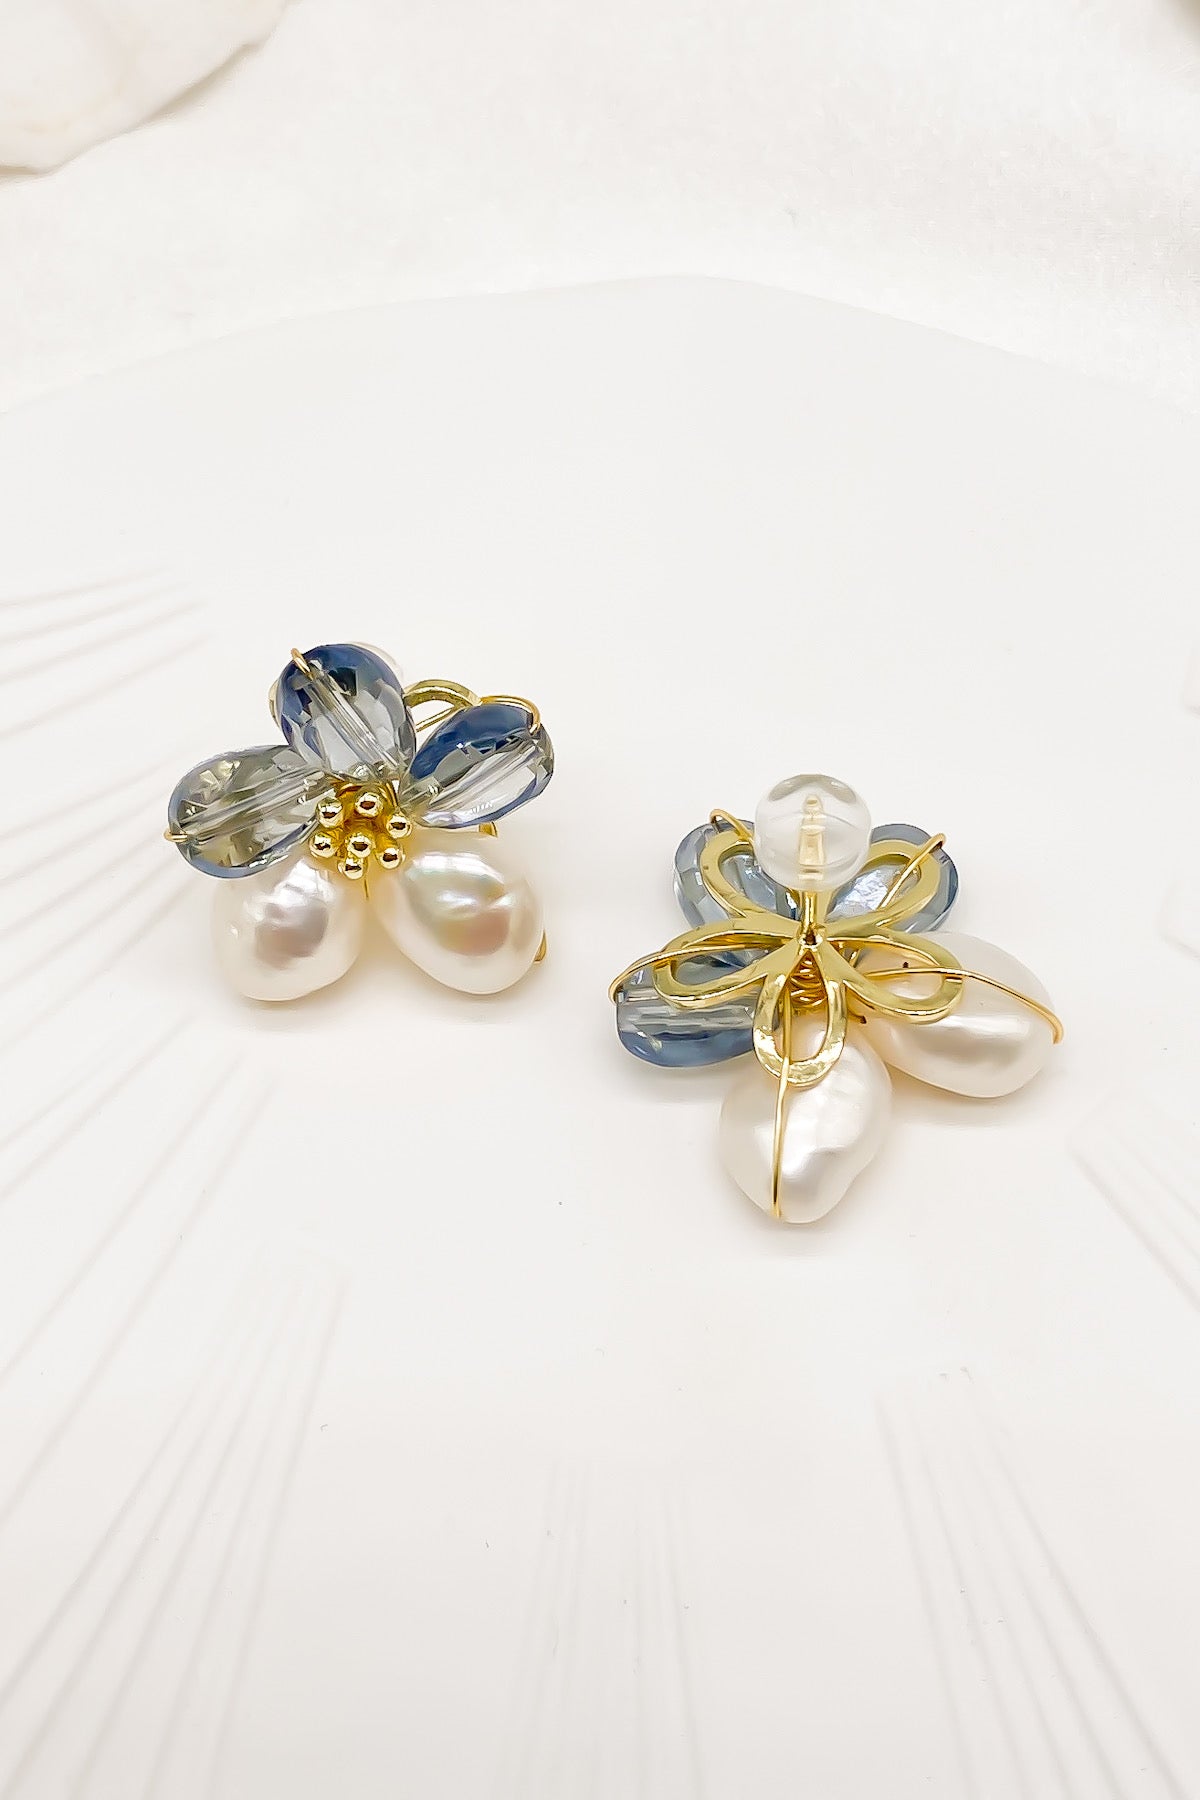 SKYE Shop Chic Modern Elegant Classy Women Jewelry French Parisian Minimalist Kira Cystal Flower Freshwater Pearl Earrings 3